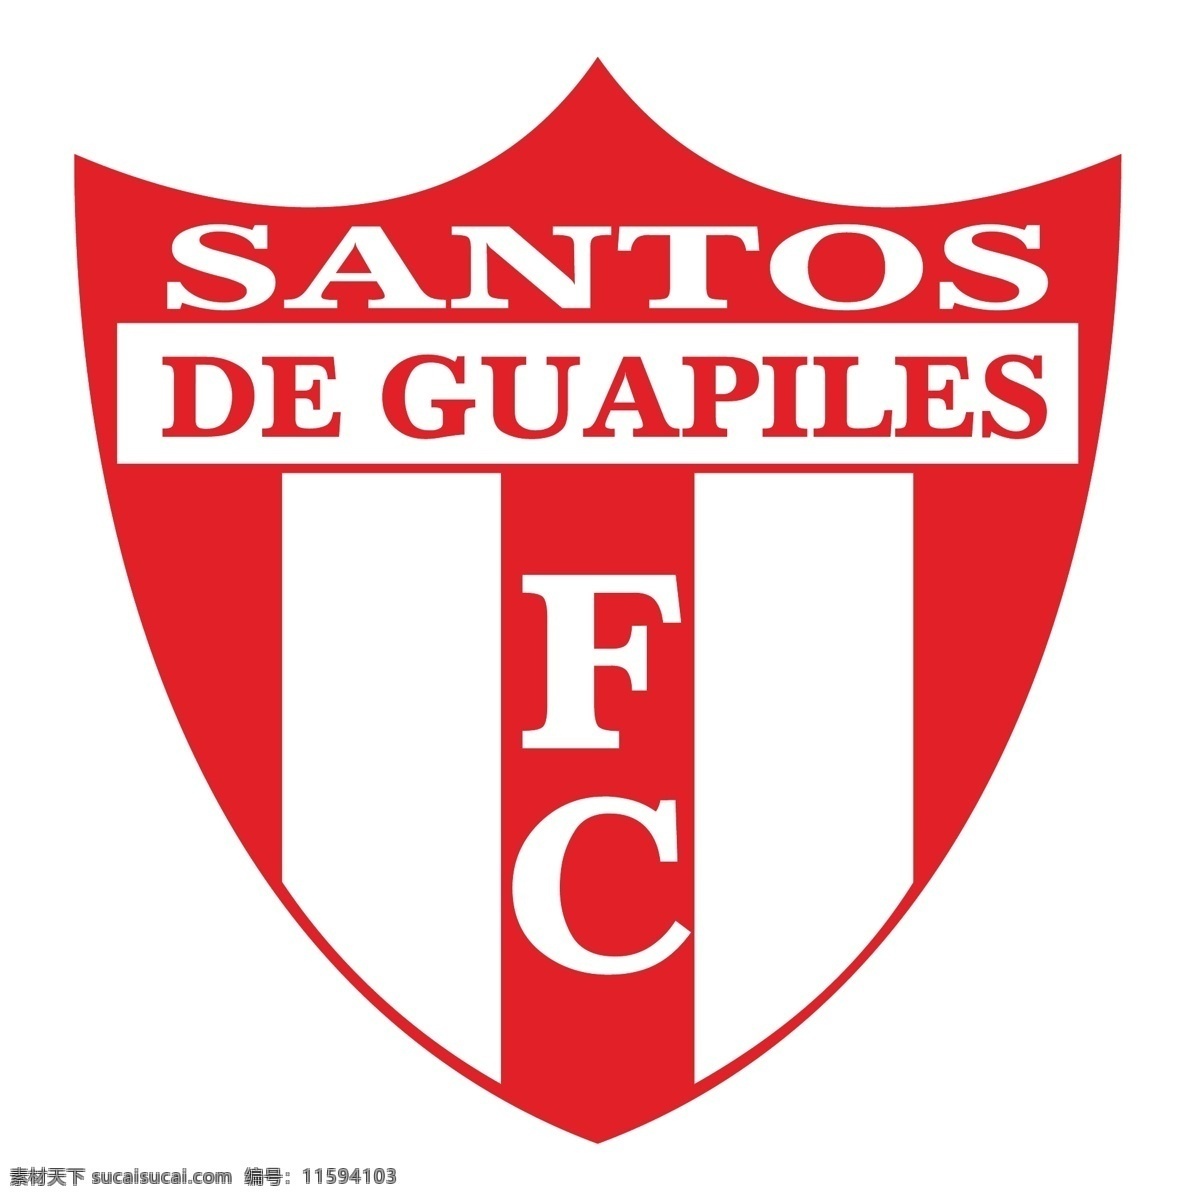 桑托斯 足球 俱乐部 去 瓜皮 莱斯 桑托斯足球 足球俱乐部 瓜皮莱斯 奥林匹亚 卡莱 塔 奥利维亚 向量 标志 瓦伦西亚 巴塞罗那 矢量图 建筑家居